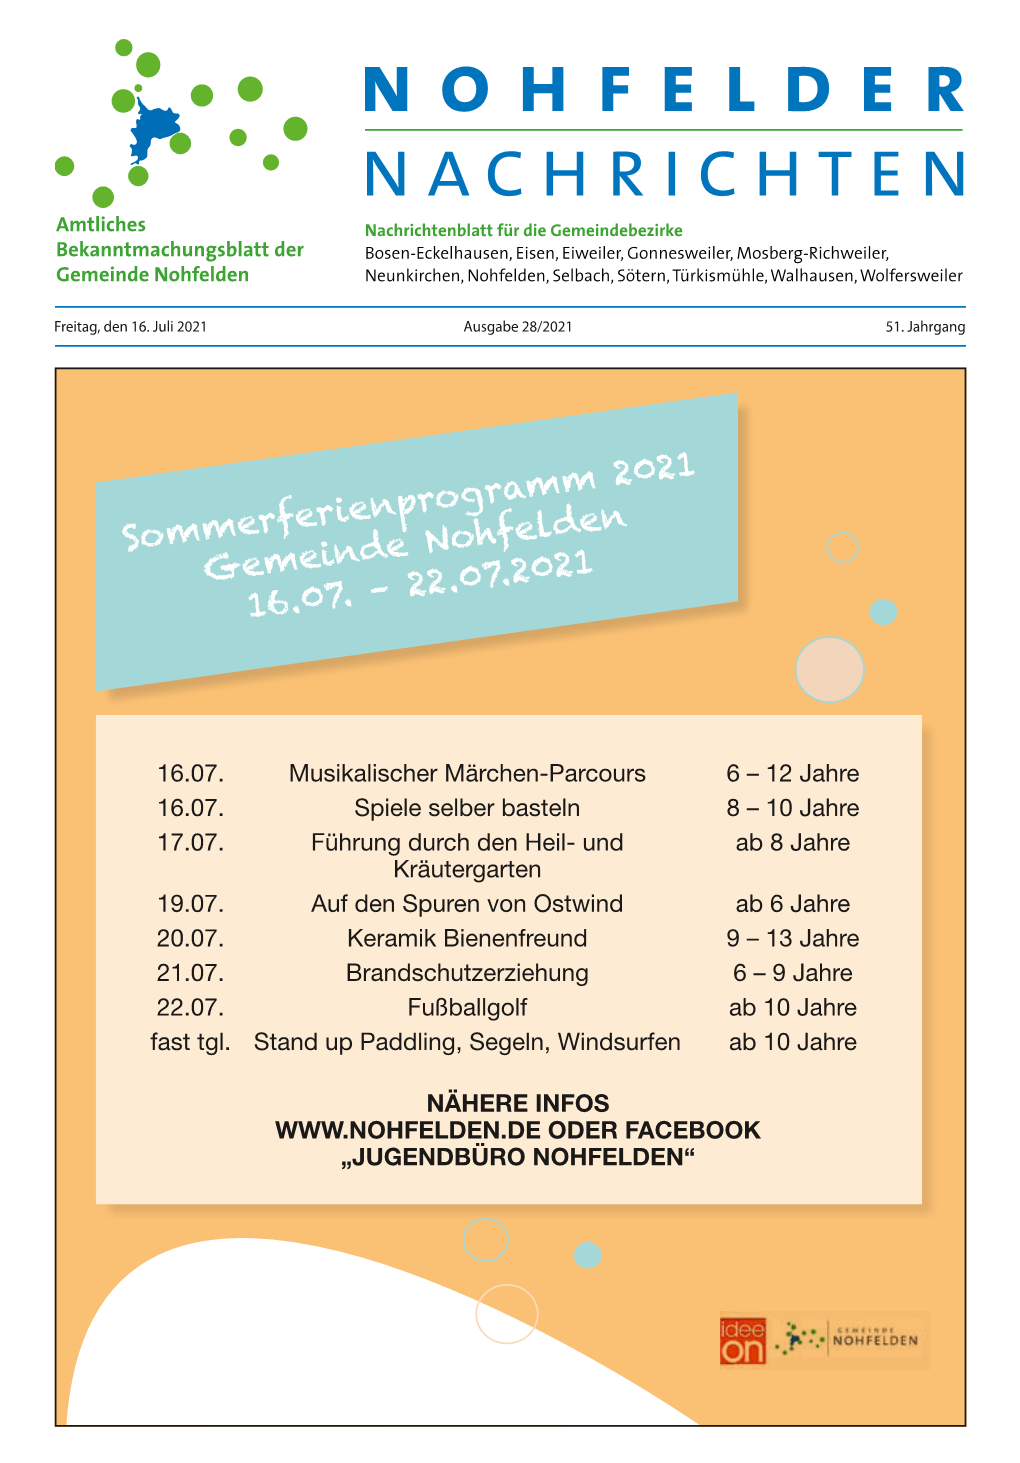 Sommerferienprogramm 2021 Gemeinde Nohfelden 16.07. – 22.07.2021